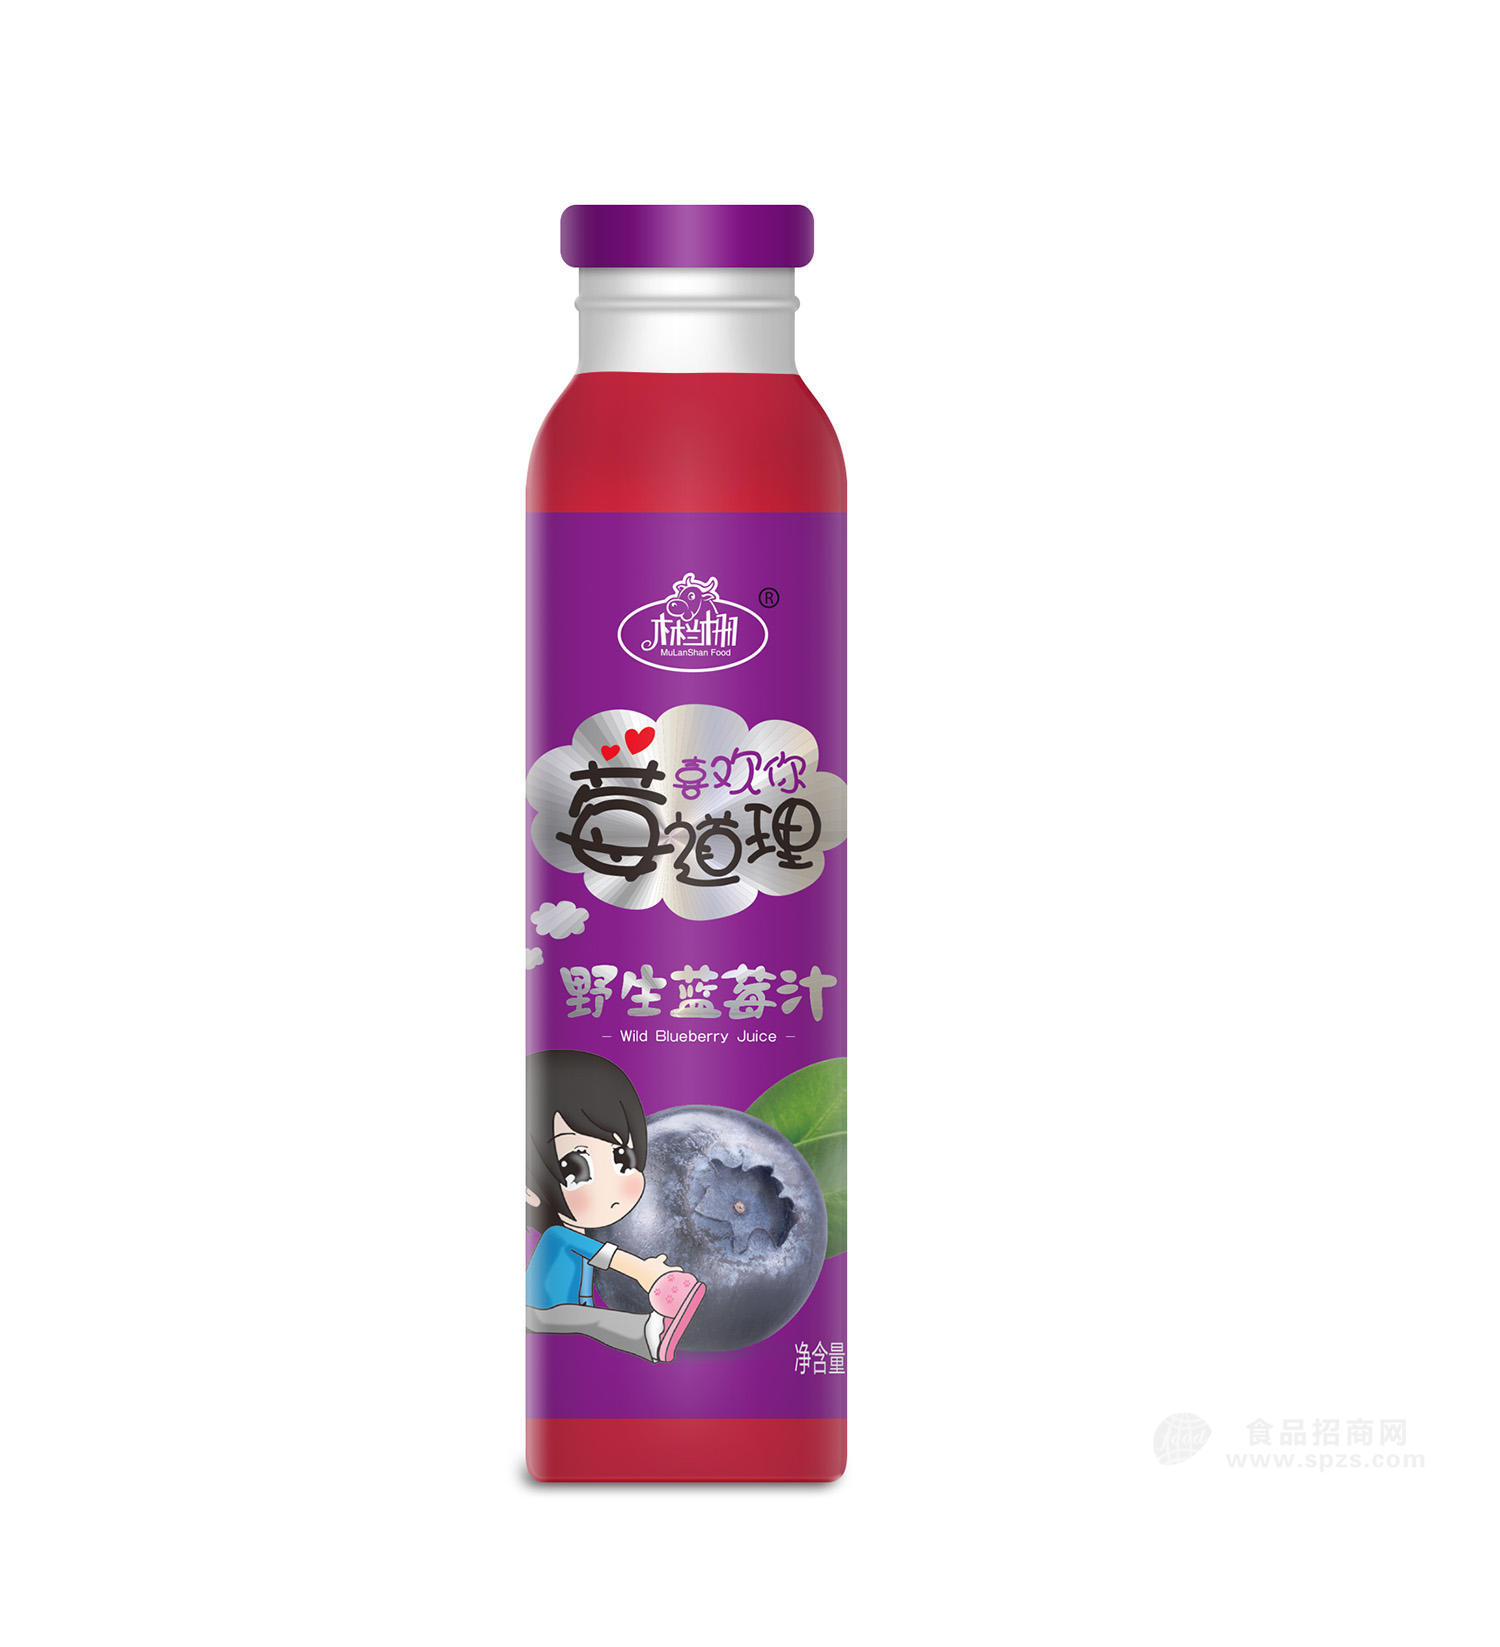 野生蓝莓汁 蓝莓瓶效果图